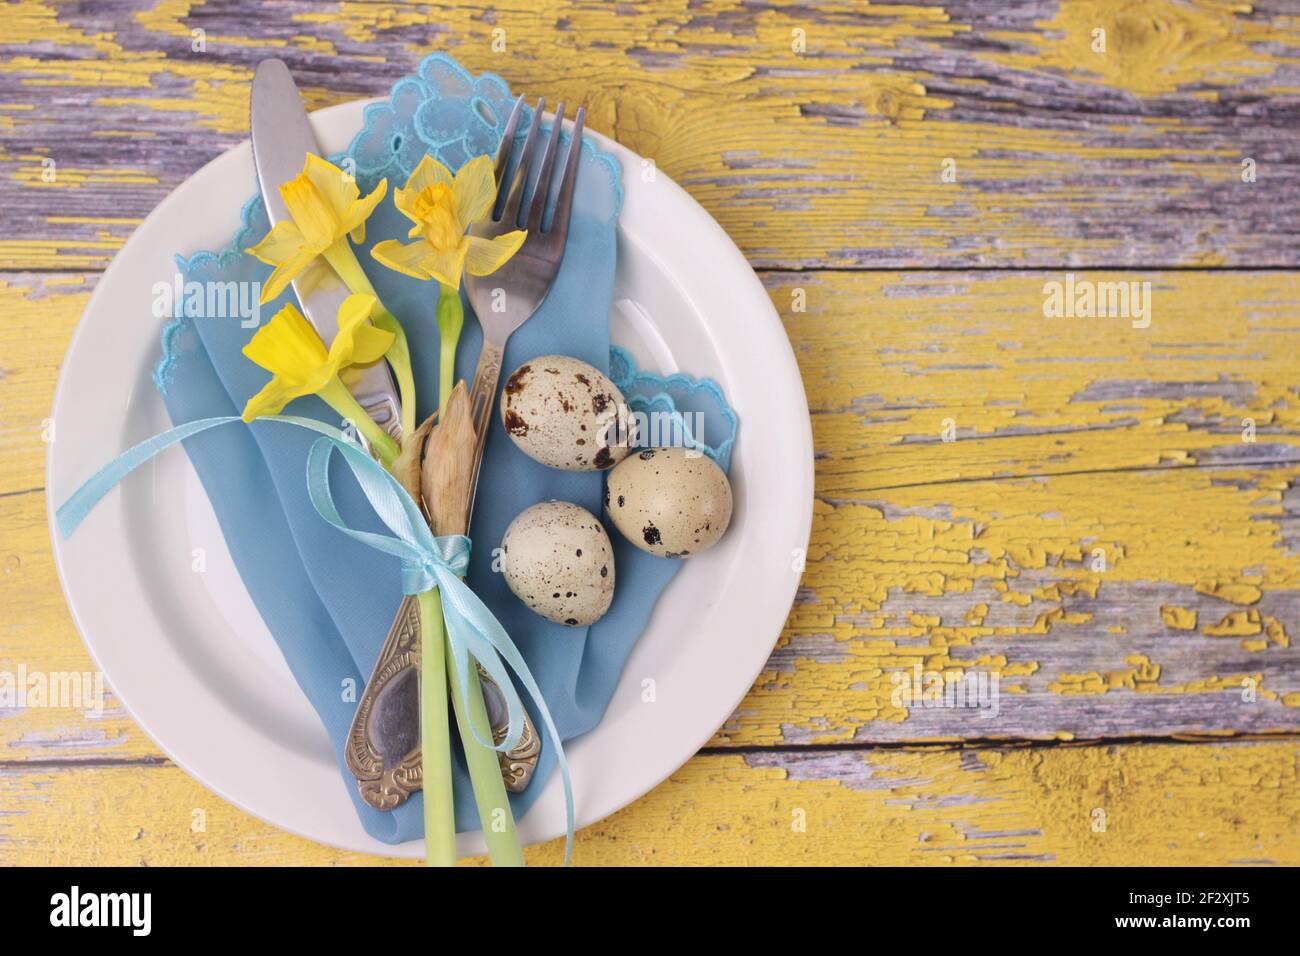 Schöne Osterfeiertage Tischausstattung mit Besteck auf Scheunenbrettern.Narzissen, Wachteleier, Essgeschirr mit Schleife auf türkisfarbener Serviette und weißem Teller Stockfoto